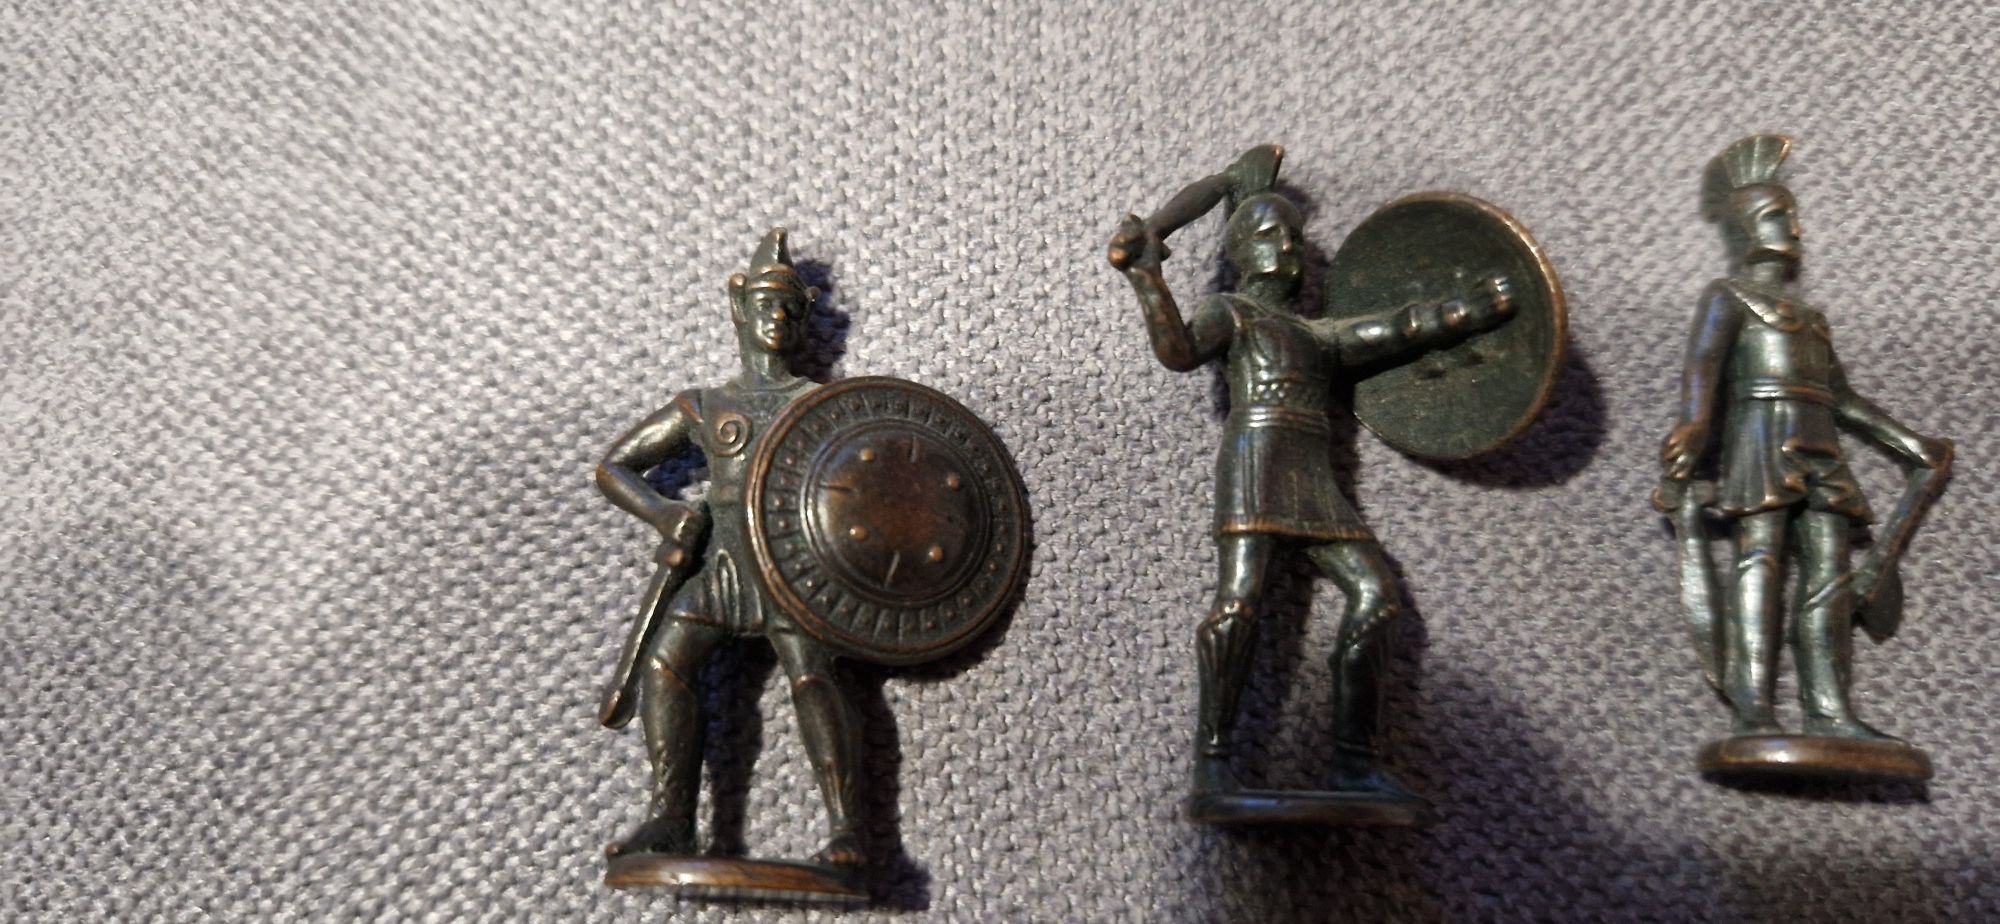 Grecy metalowe figurki z kinder niespodzianka